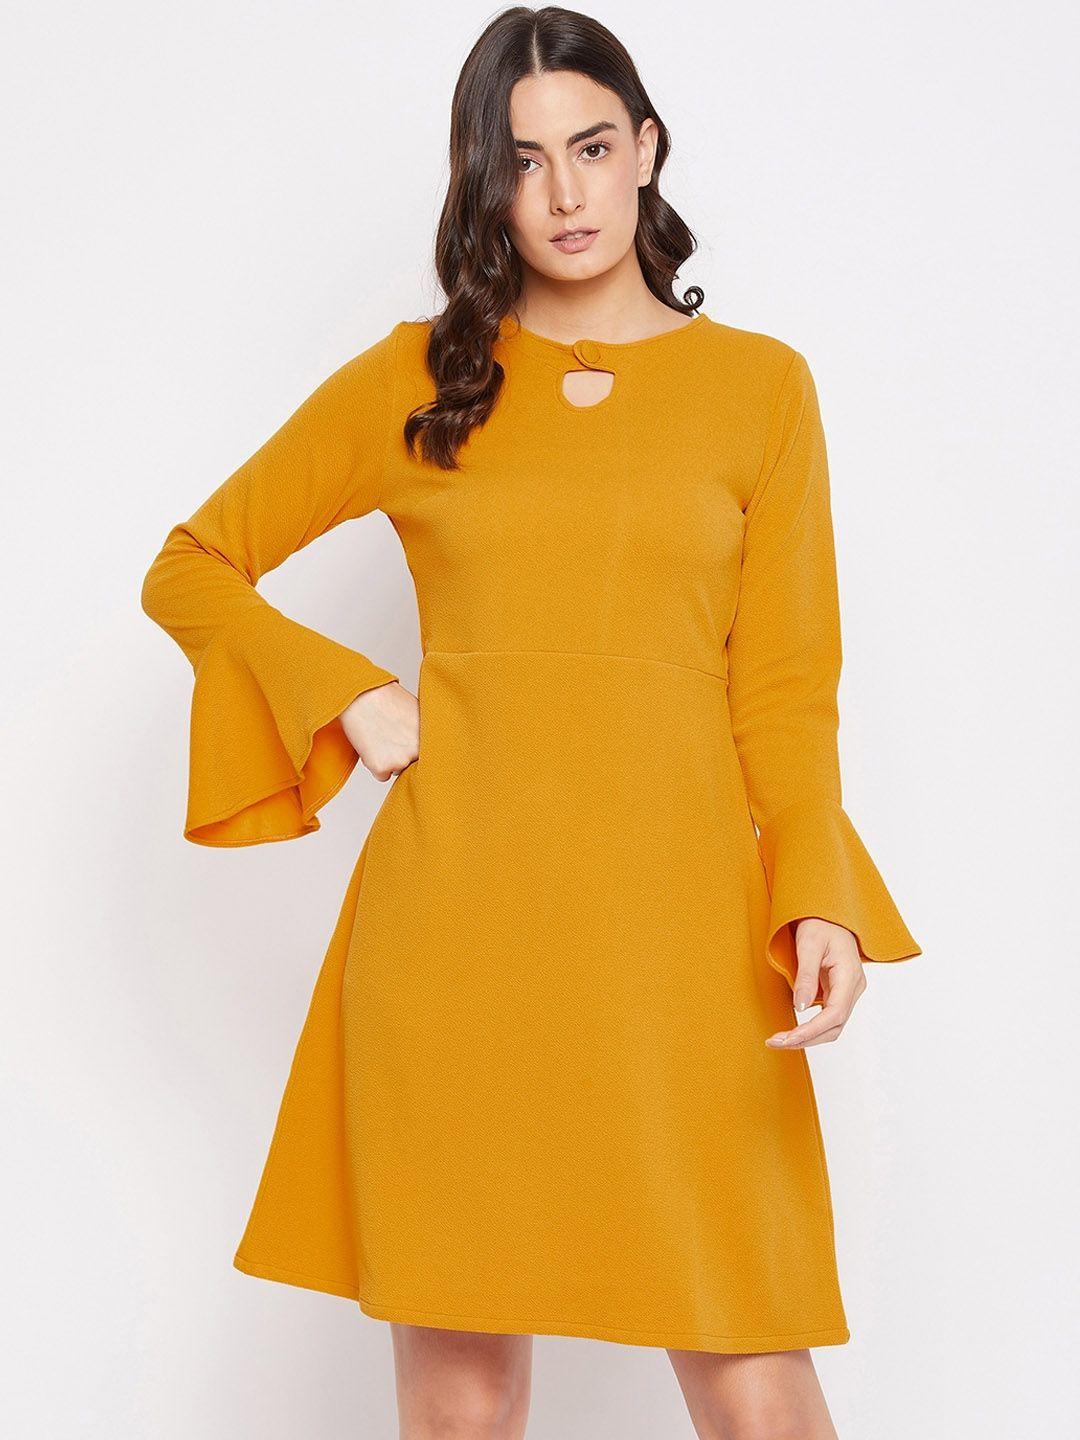 purys-mustard-yellow-keyhole-neck-a-line-dress